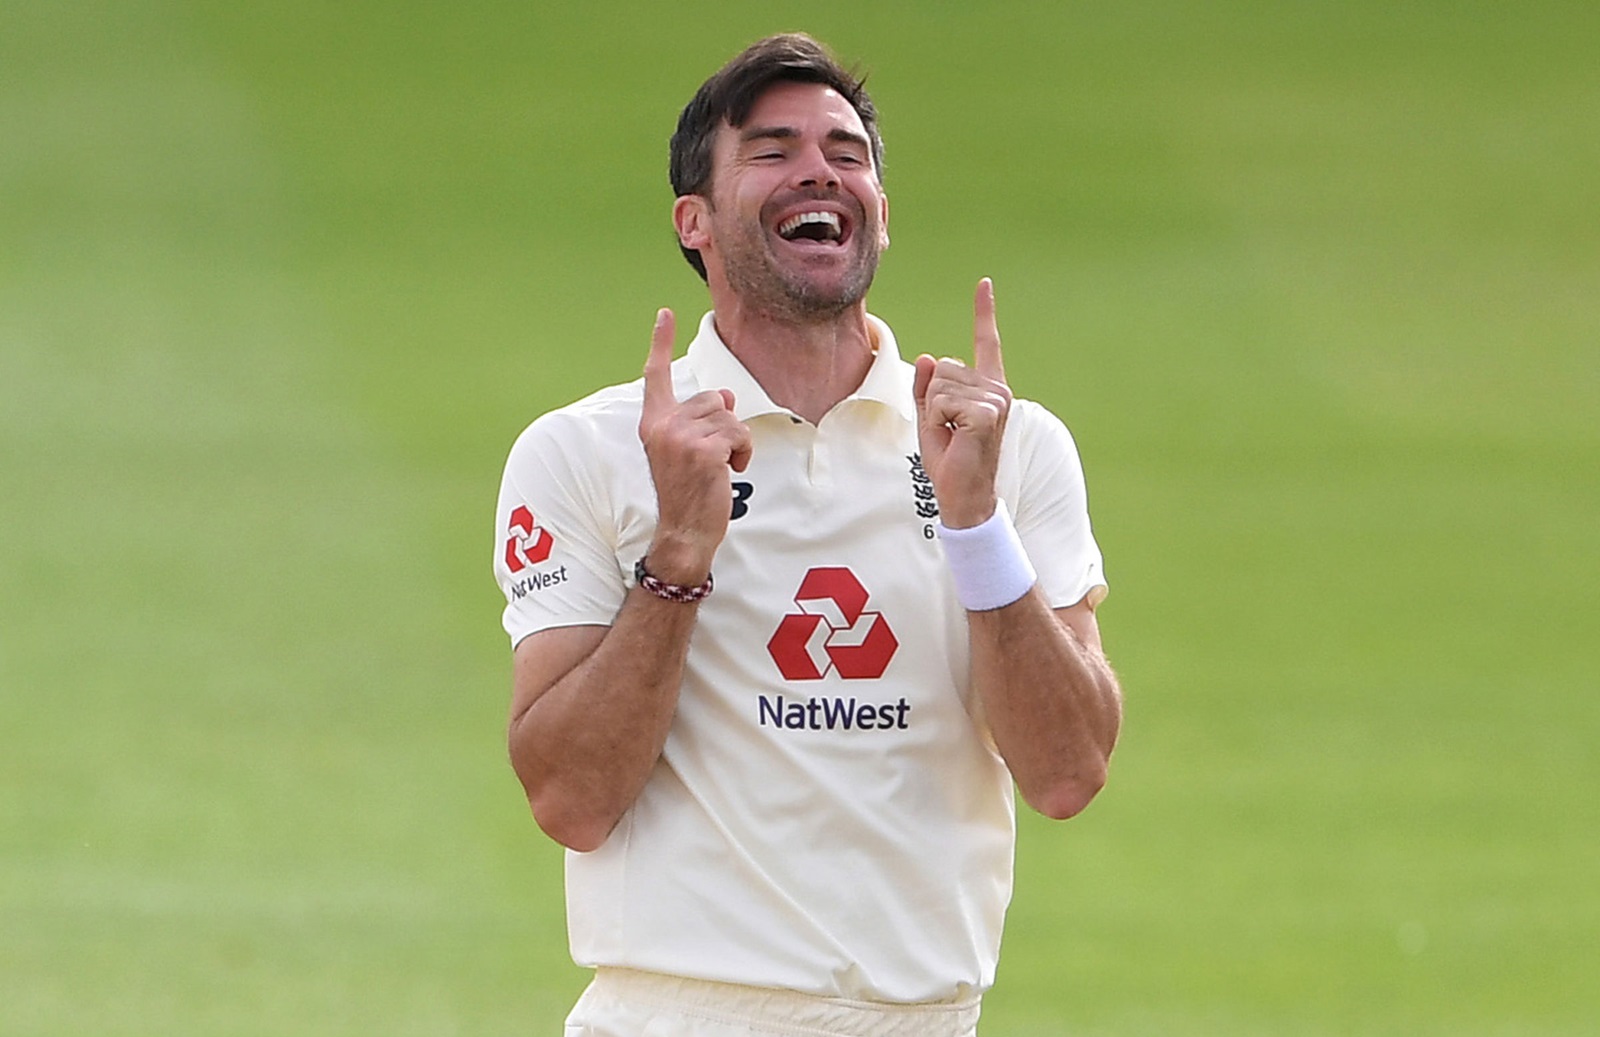 इंग्लैंड के दिग्गज तेज गेंदबाज जेम्स एंडरसन की टेस्ट क्रिकेट में एक और खास उपलब्धि, इस मामले में रिचर्ड हेडली के बराबर 4